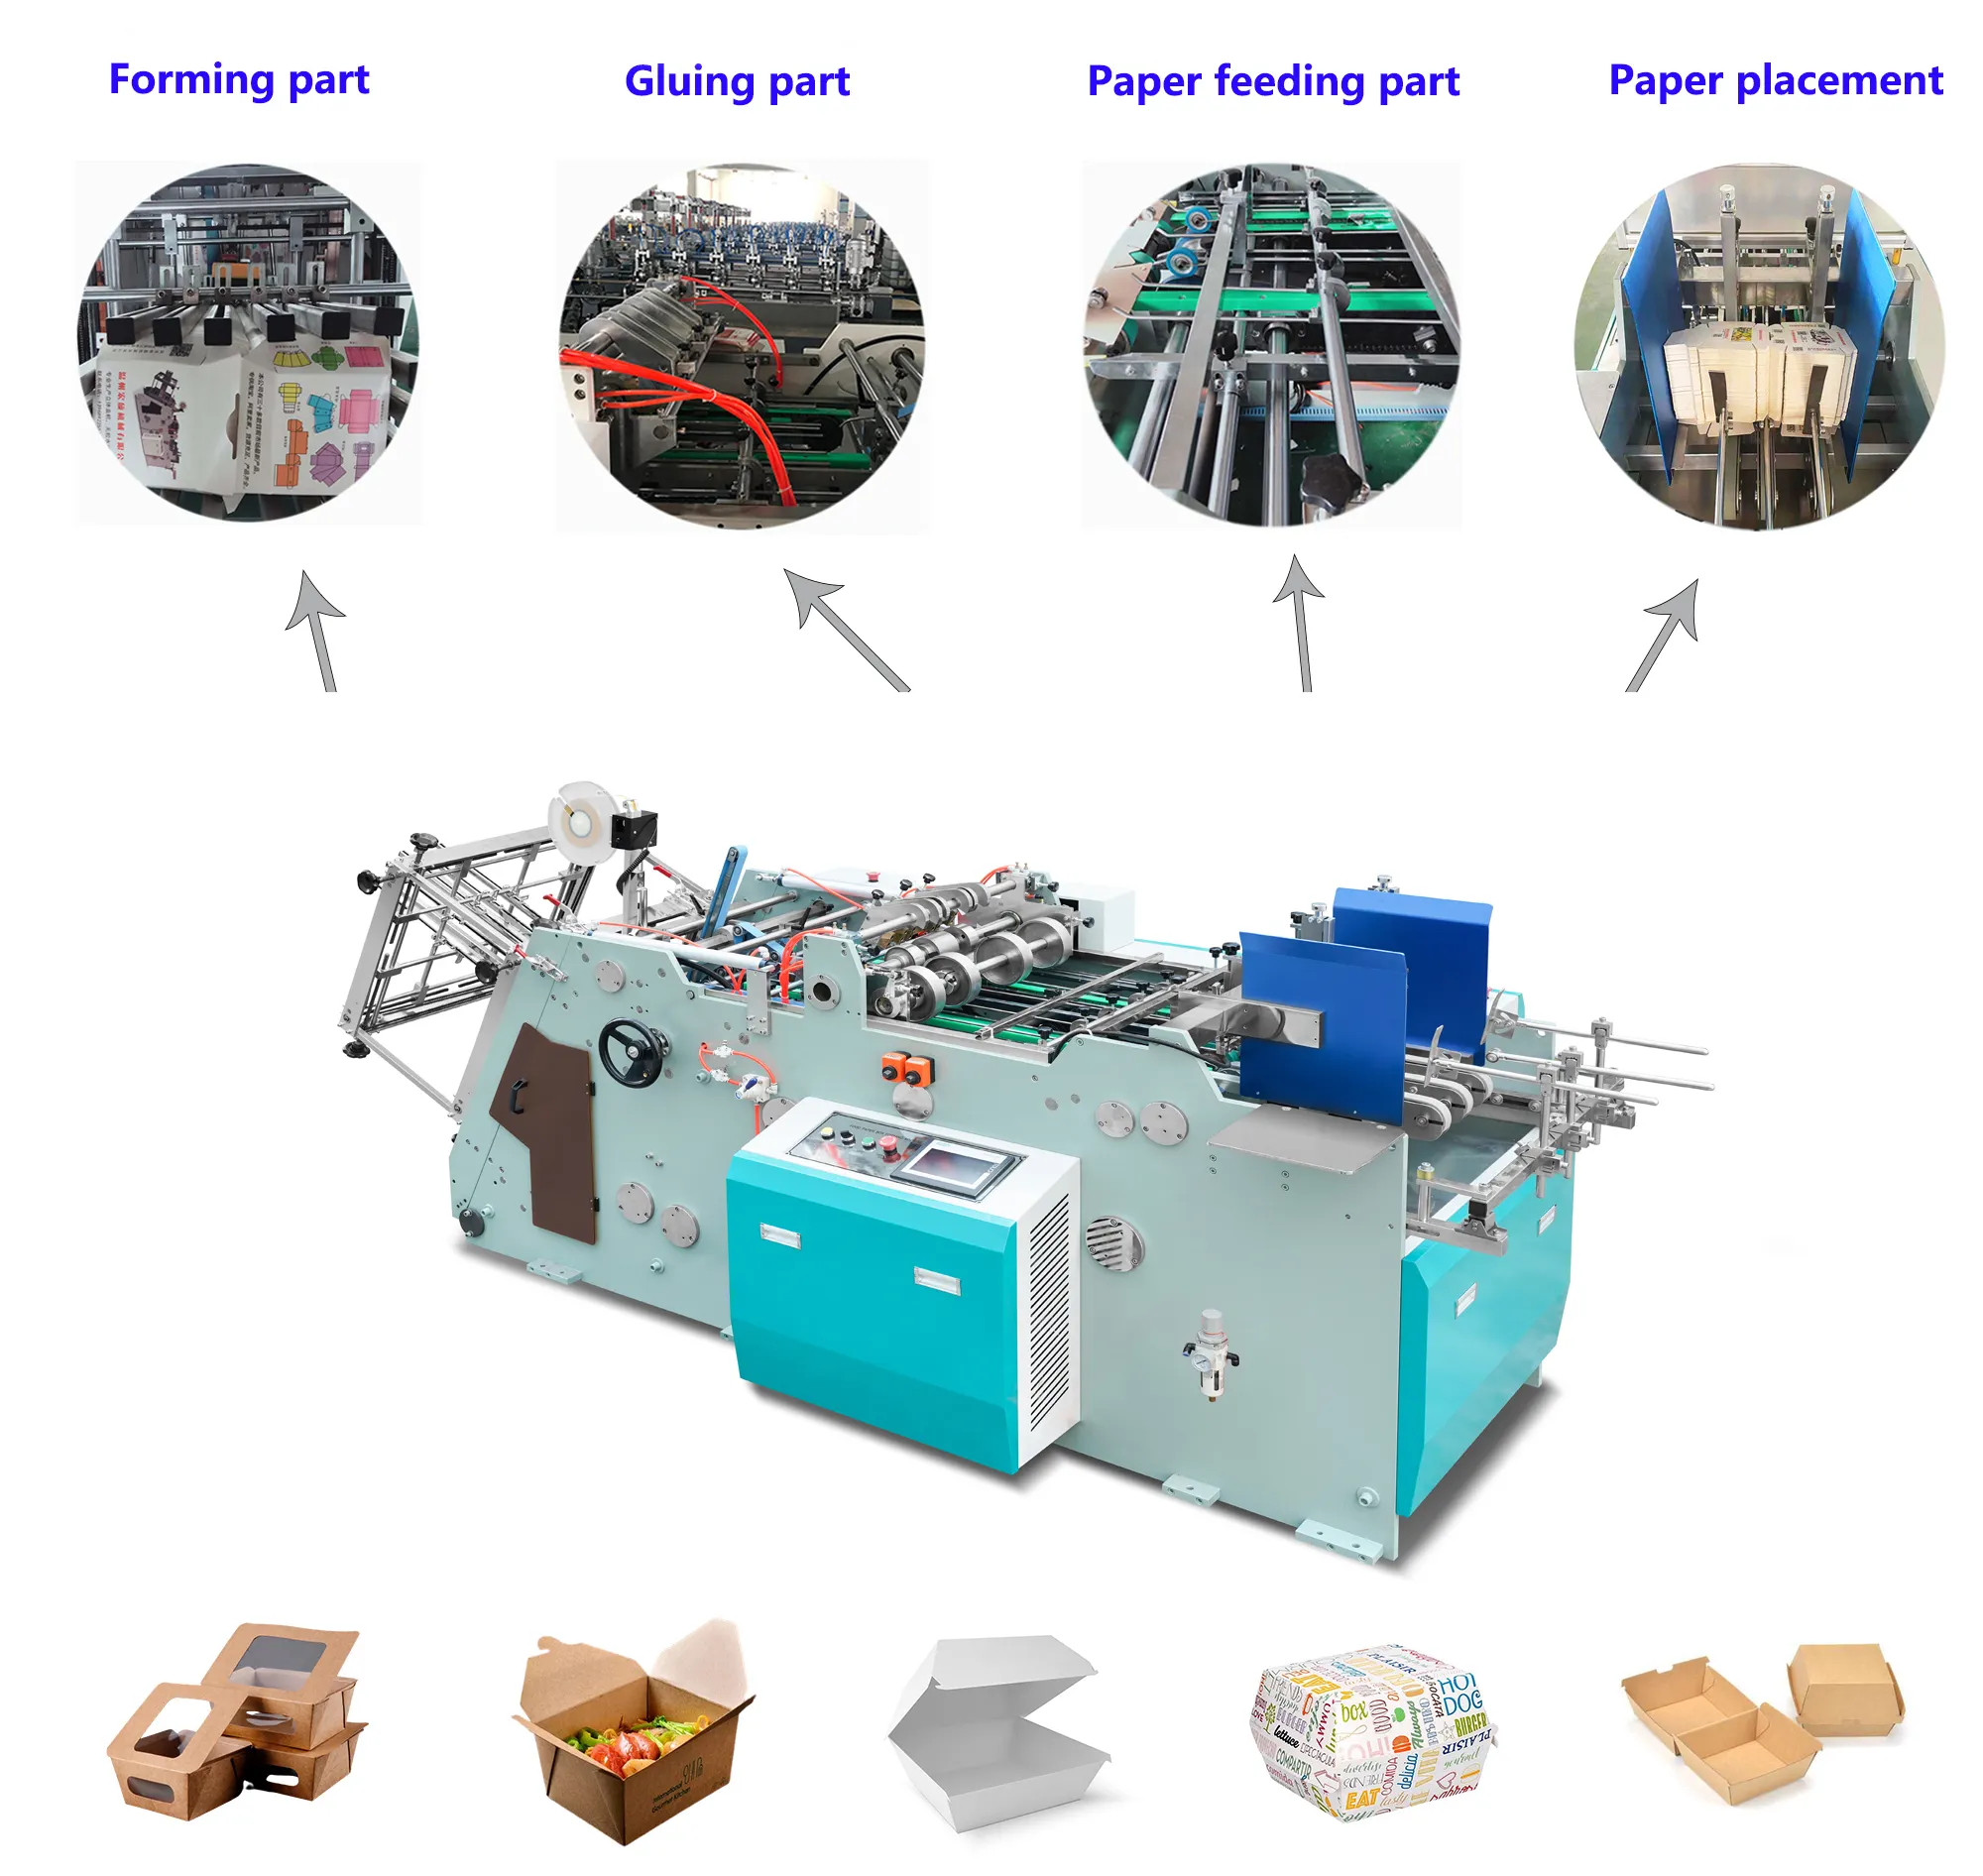 Hongshuo HS-HBJ-800 Tiongkok pabrik mesin pembuat kotak kertas berkualitas baik